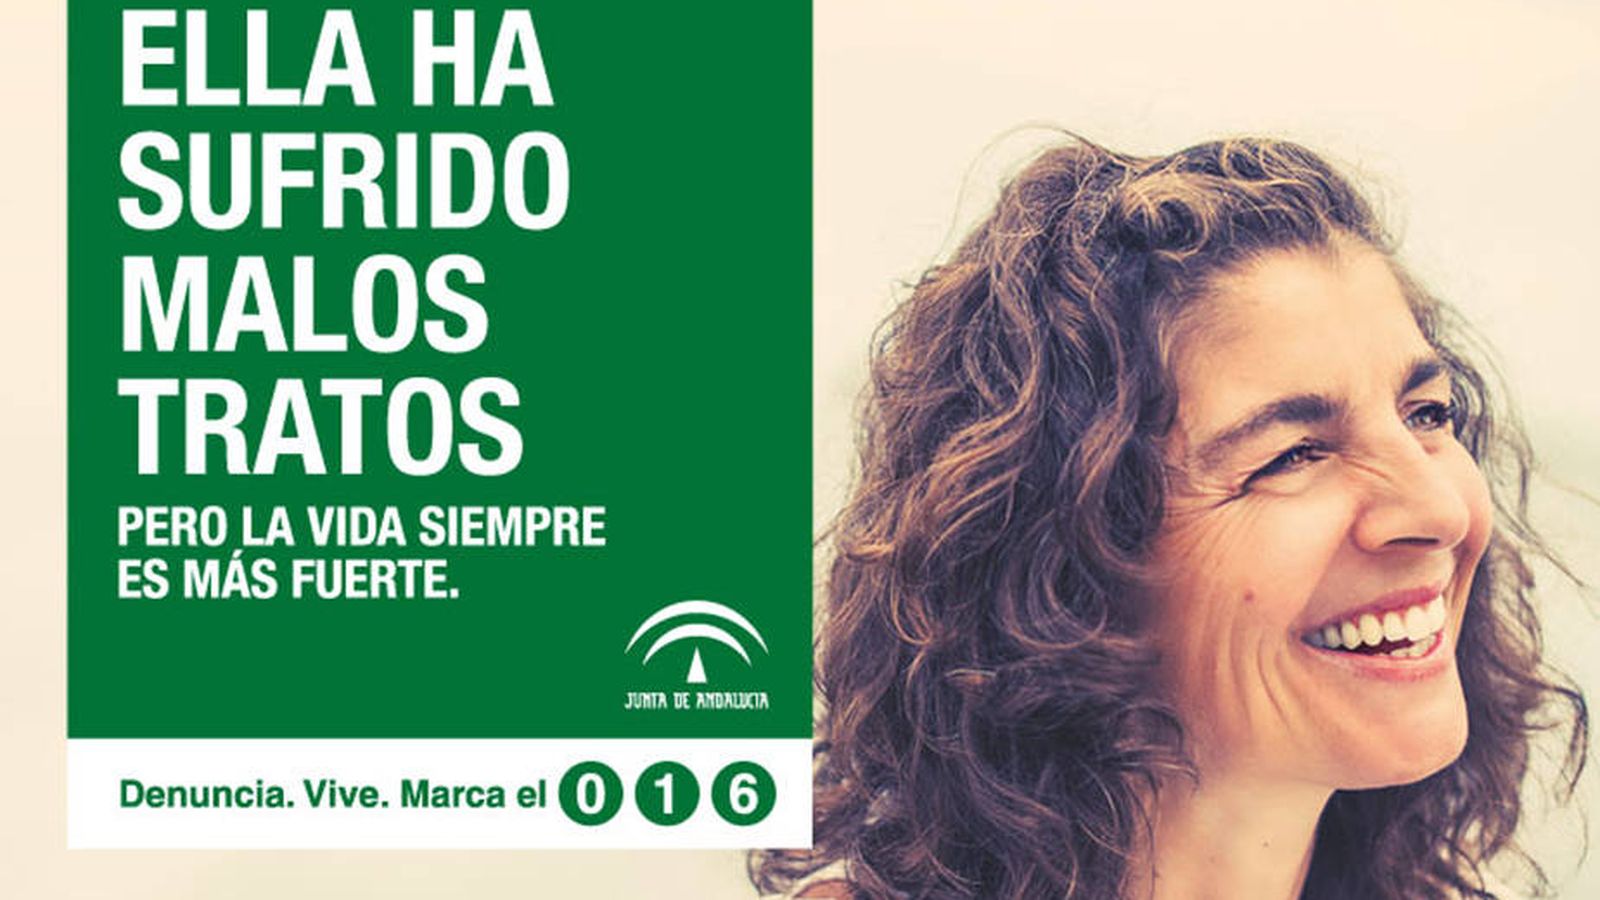 Foto: Imagen de la campaña lanzada por la Junta de Andalucía.